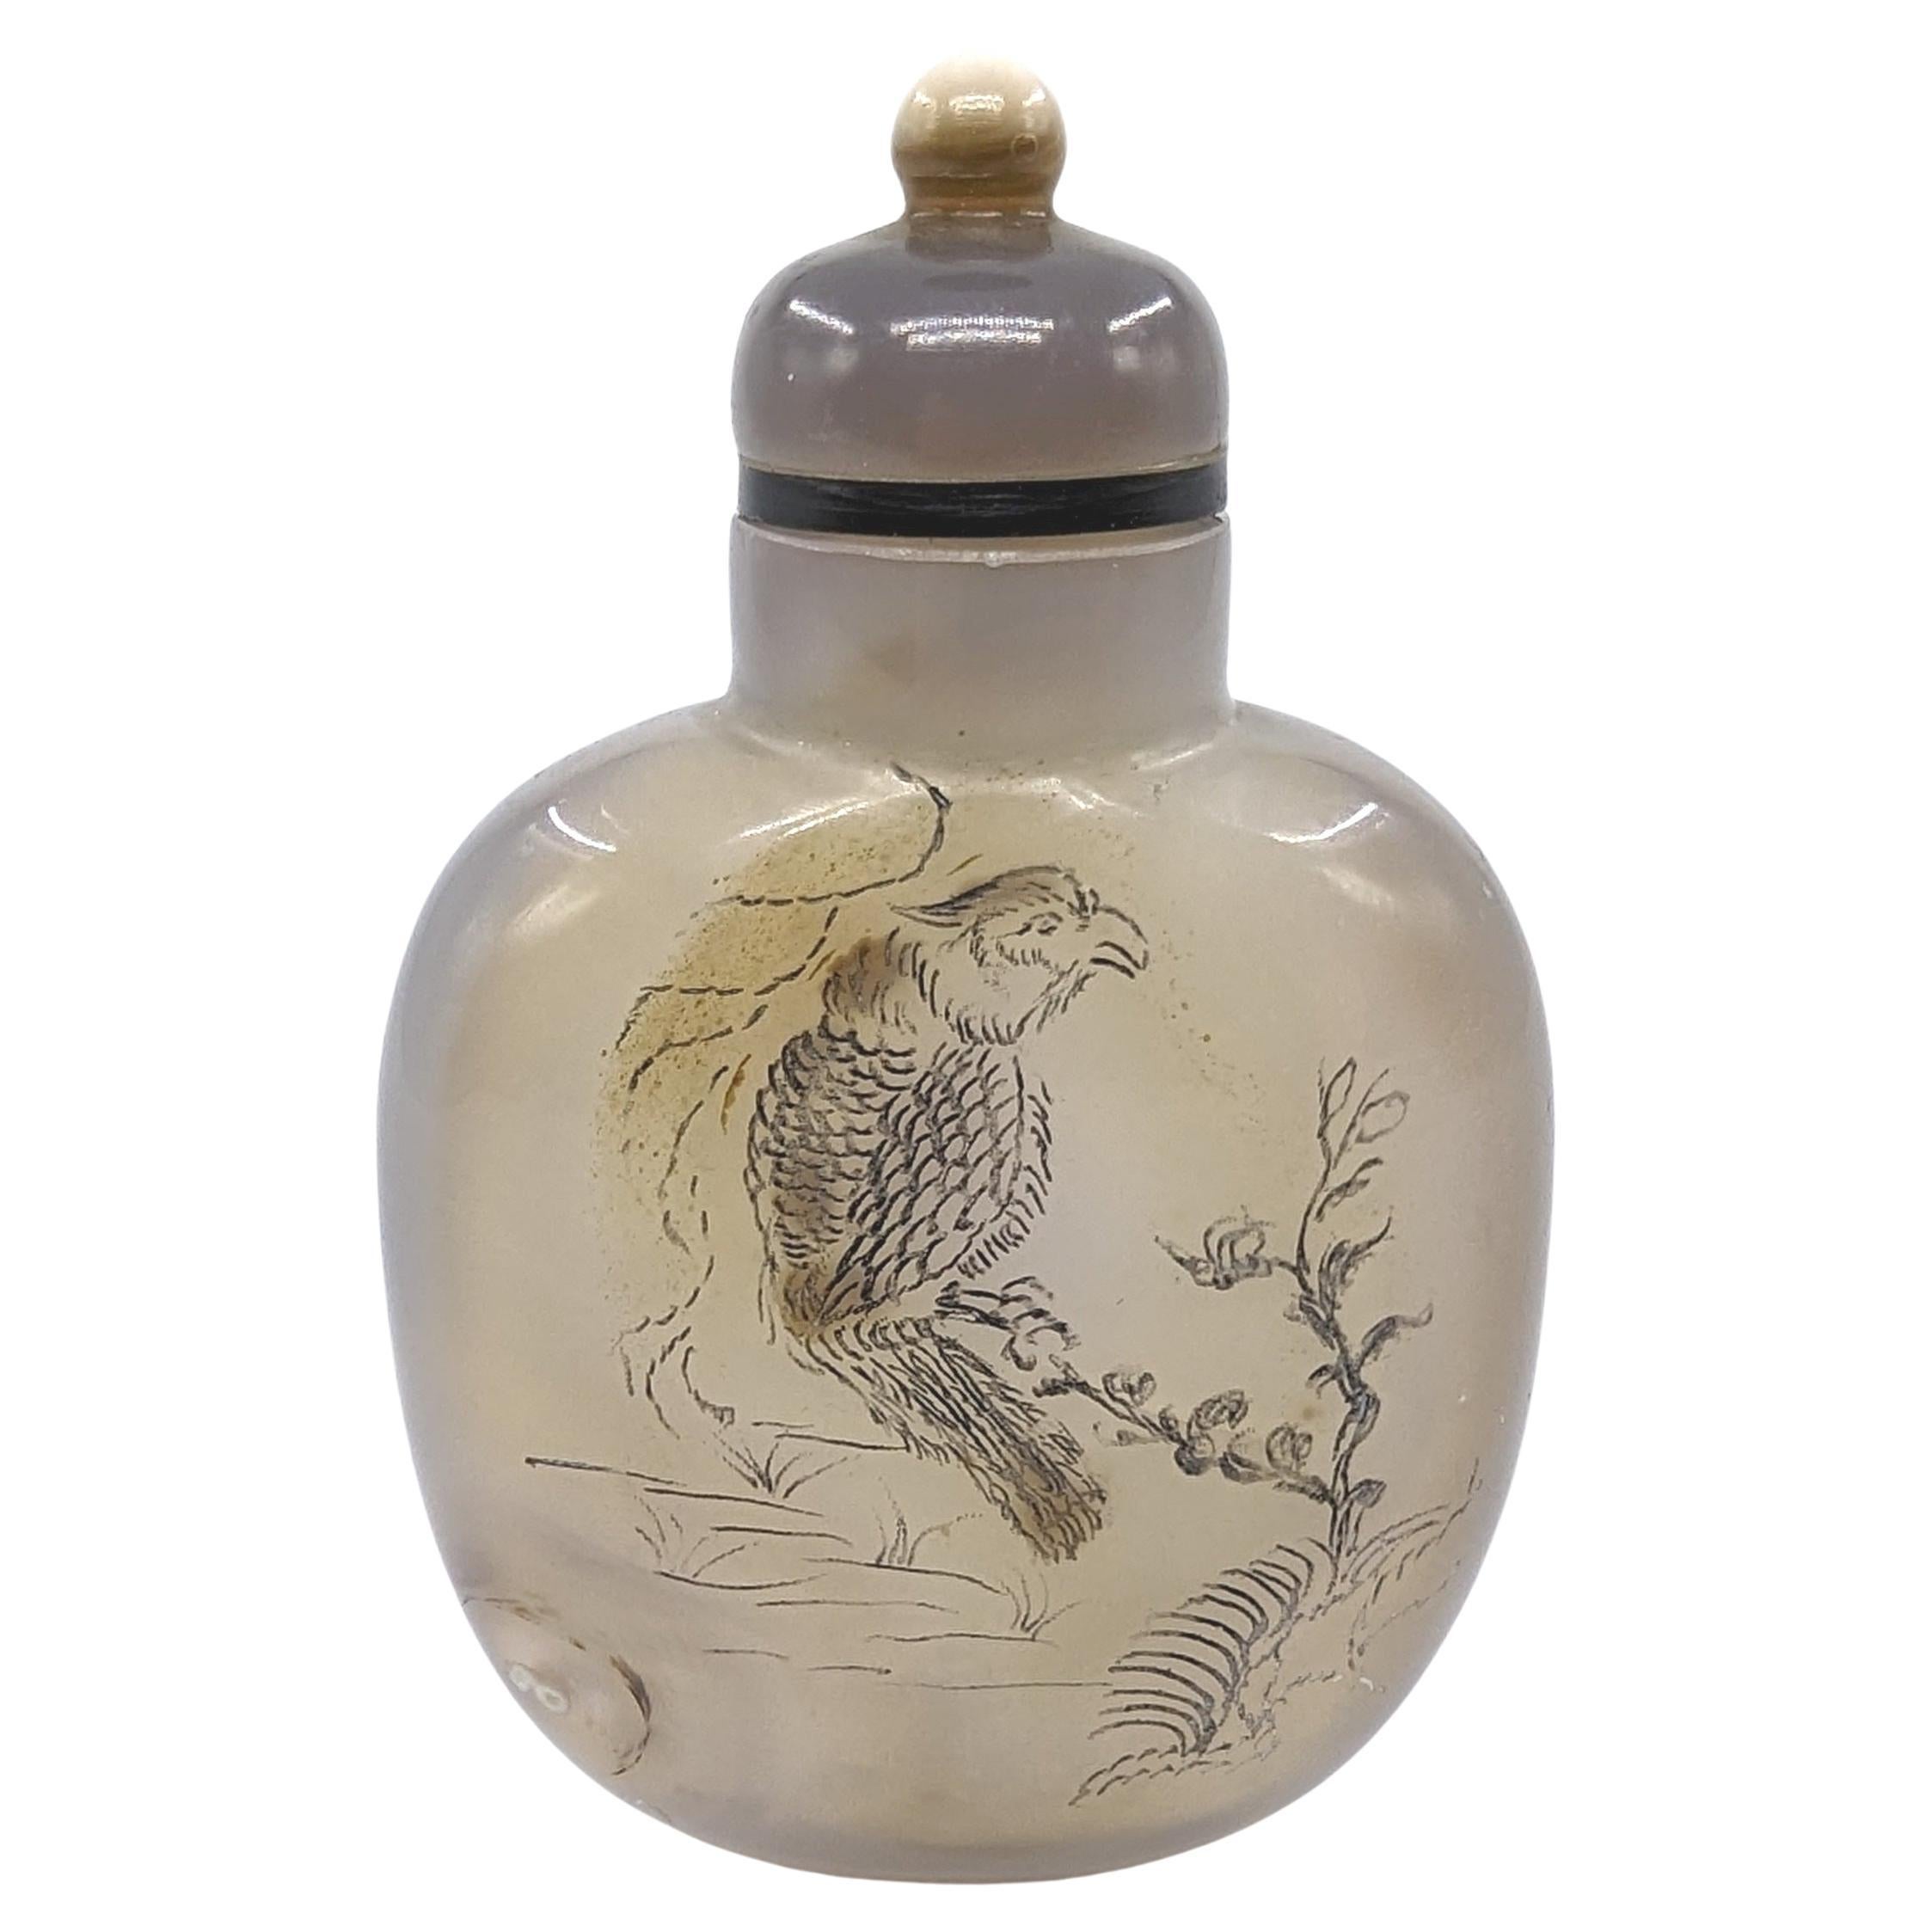 Antike chinesische Schnupftabakflasche aus Moosachat, mit eingeschnittenem und gefülltem Dekor eines Vogels in einer Gartenszene auf der einen Seite und natürlichen Dendriten-Formationen mit gut verteilten Moosmustern auf der anderen Seite. Diese